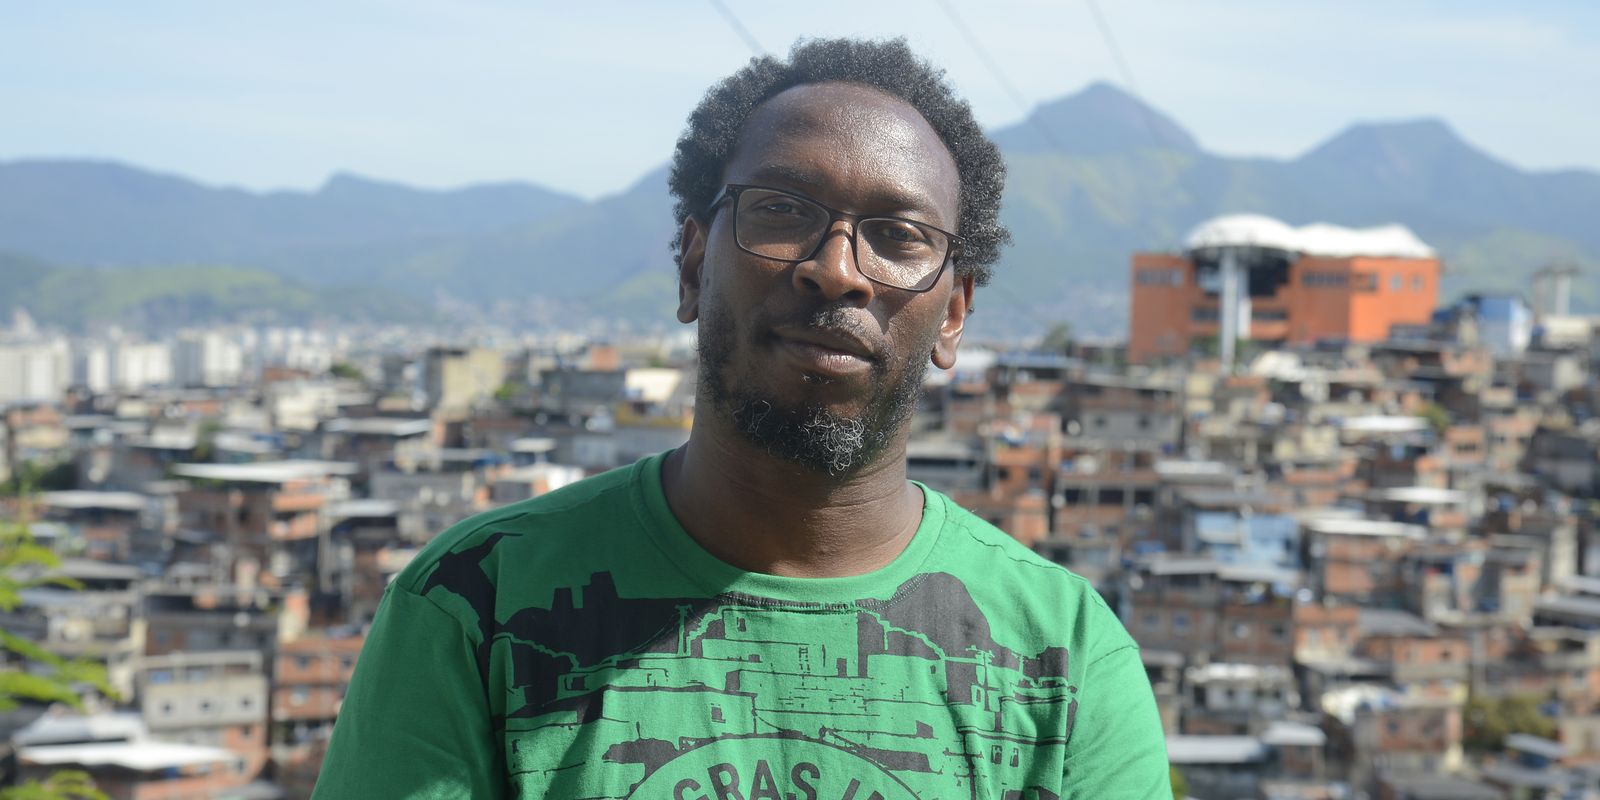 Ativista luso senegalês busca aliança contra racismo